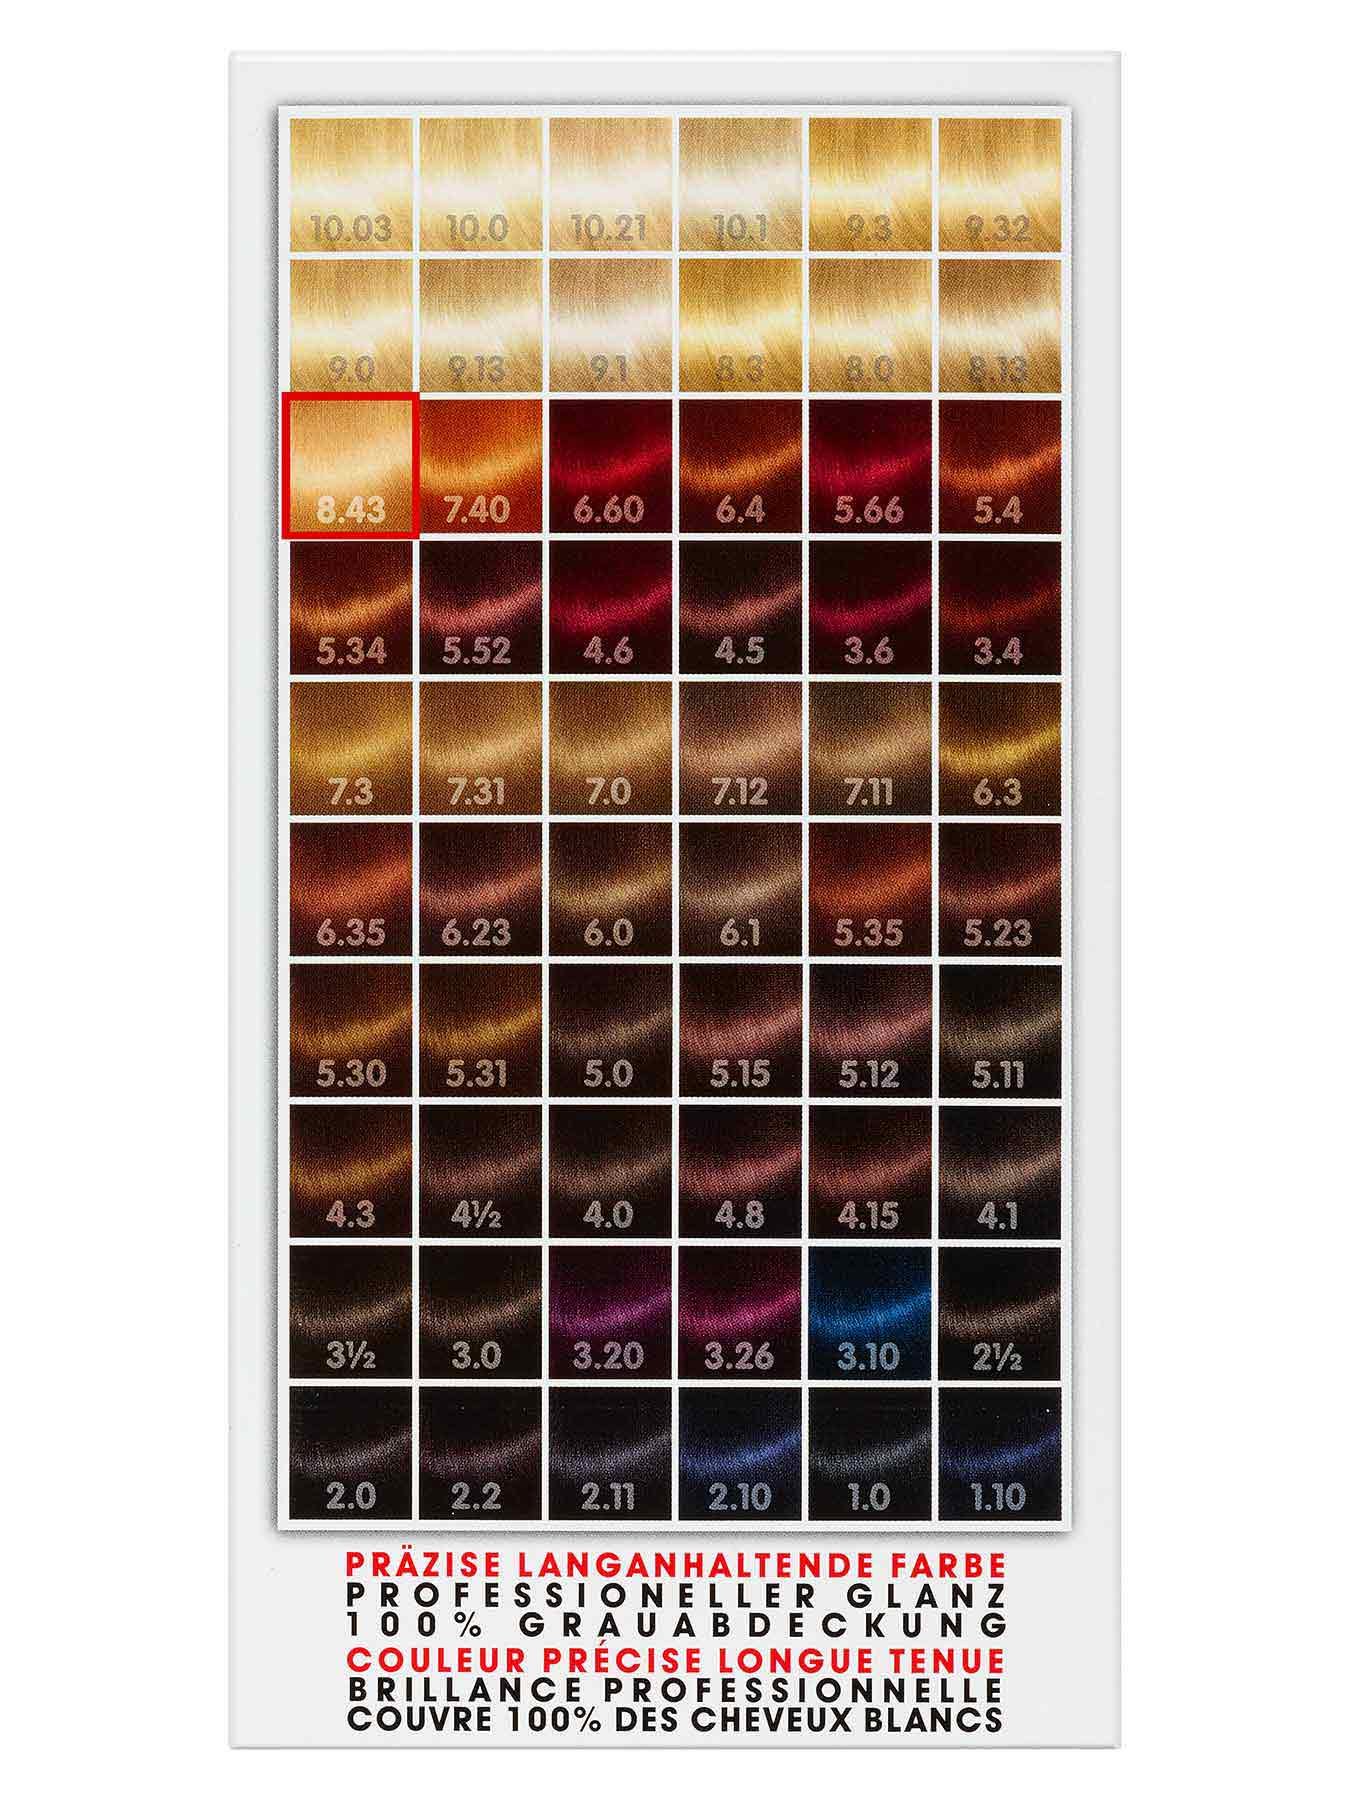 8-43-Kupfer-Goldblond-Dauerhafte-Haarfarbe-Color-Me-1Stk-Rueckseite-Garnier-Deutschland-gr